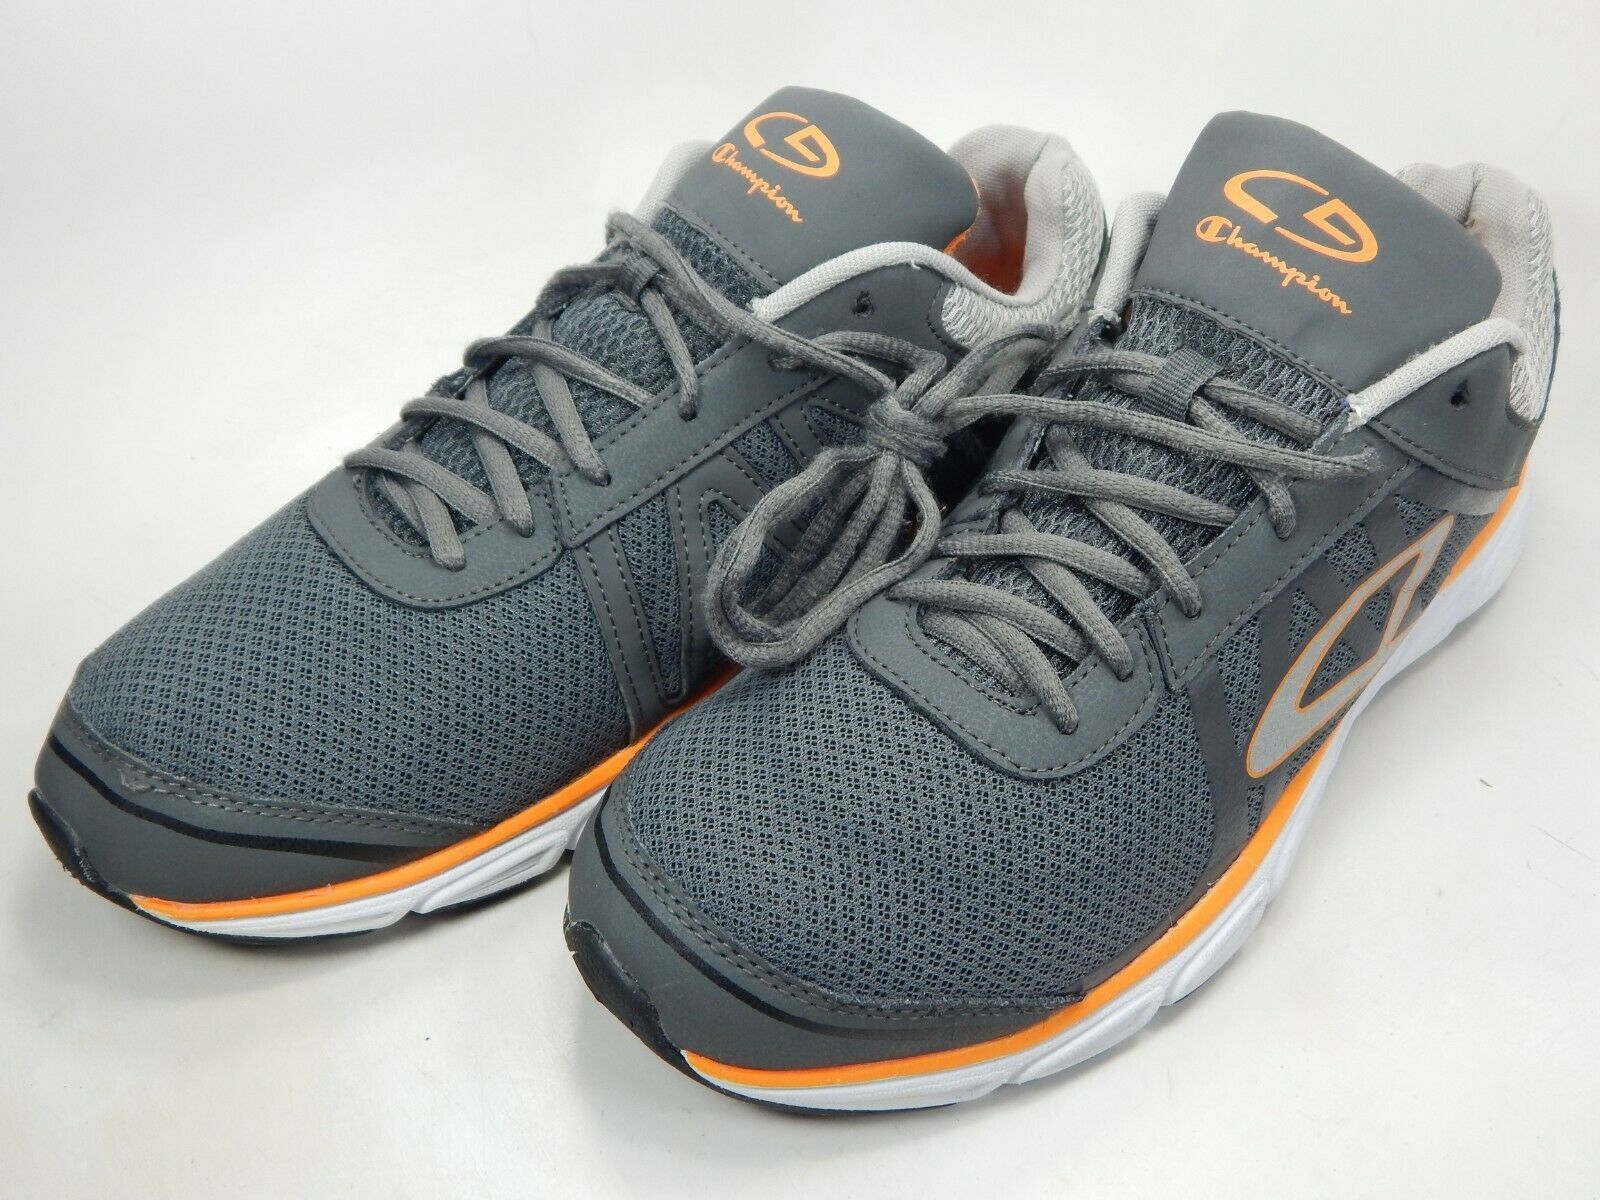 Champion C9 Geofoam Train Size 13 M (D) EU 47 Men's Training Shoes Gray ...